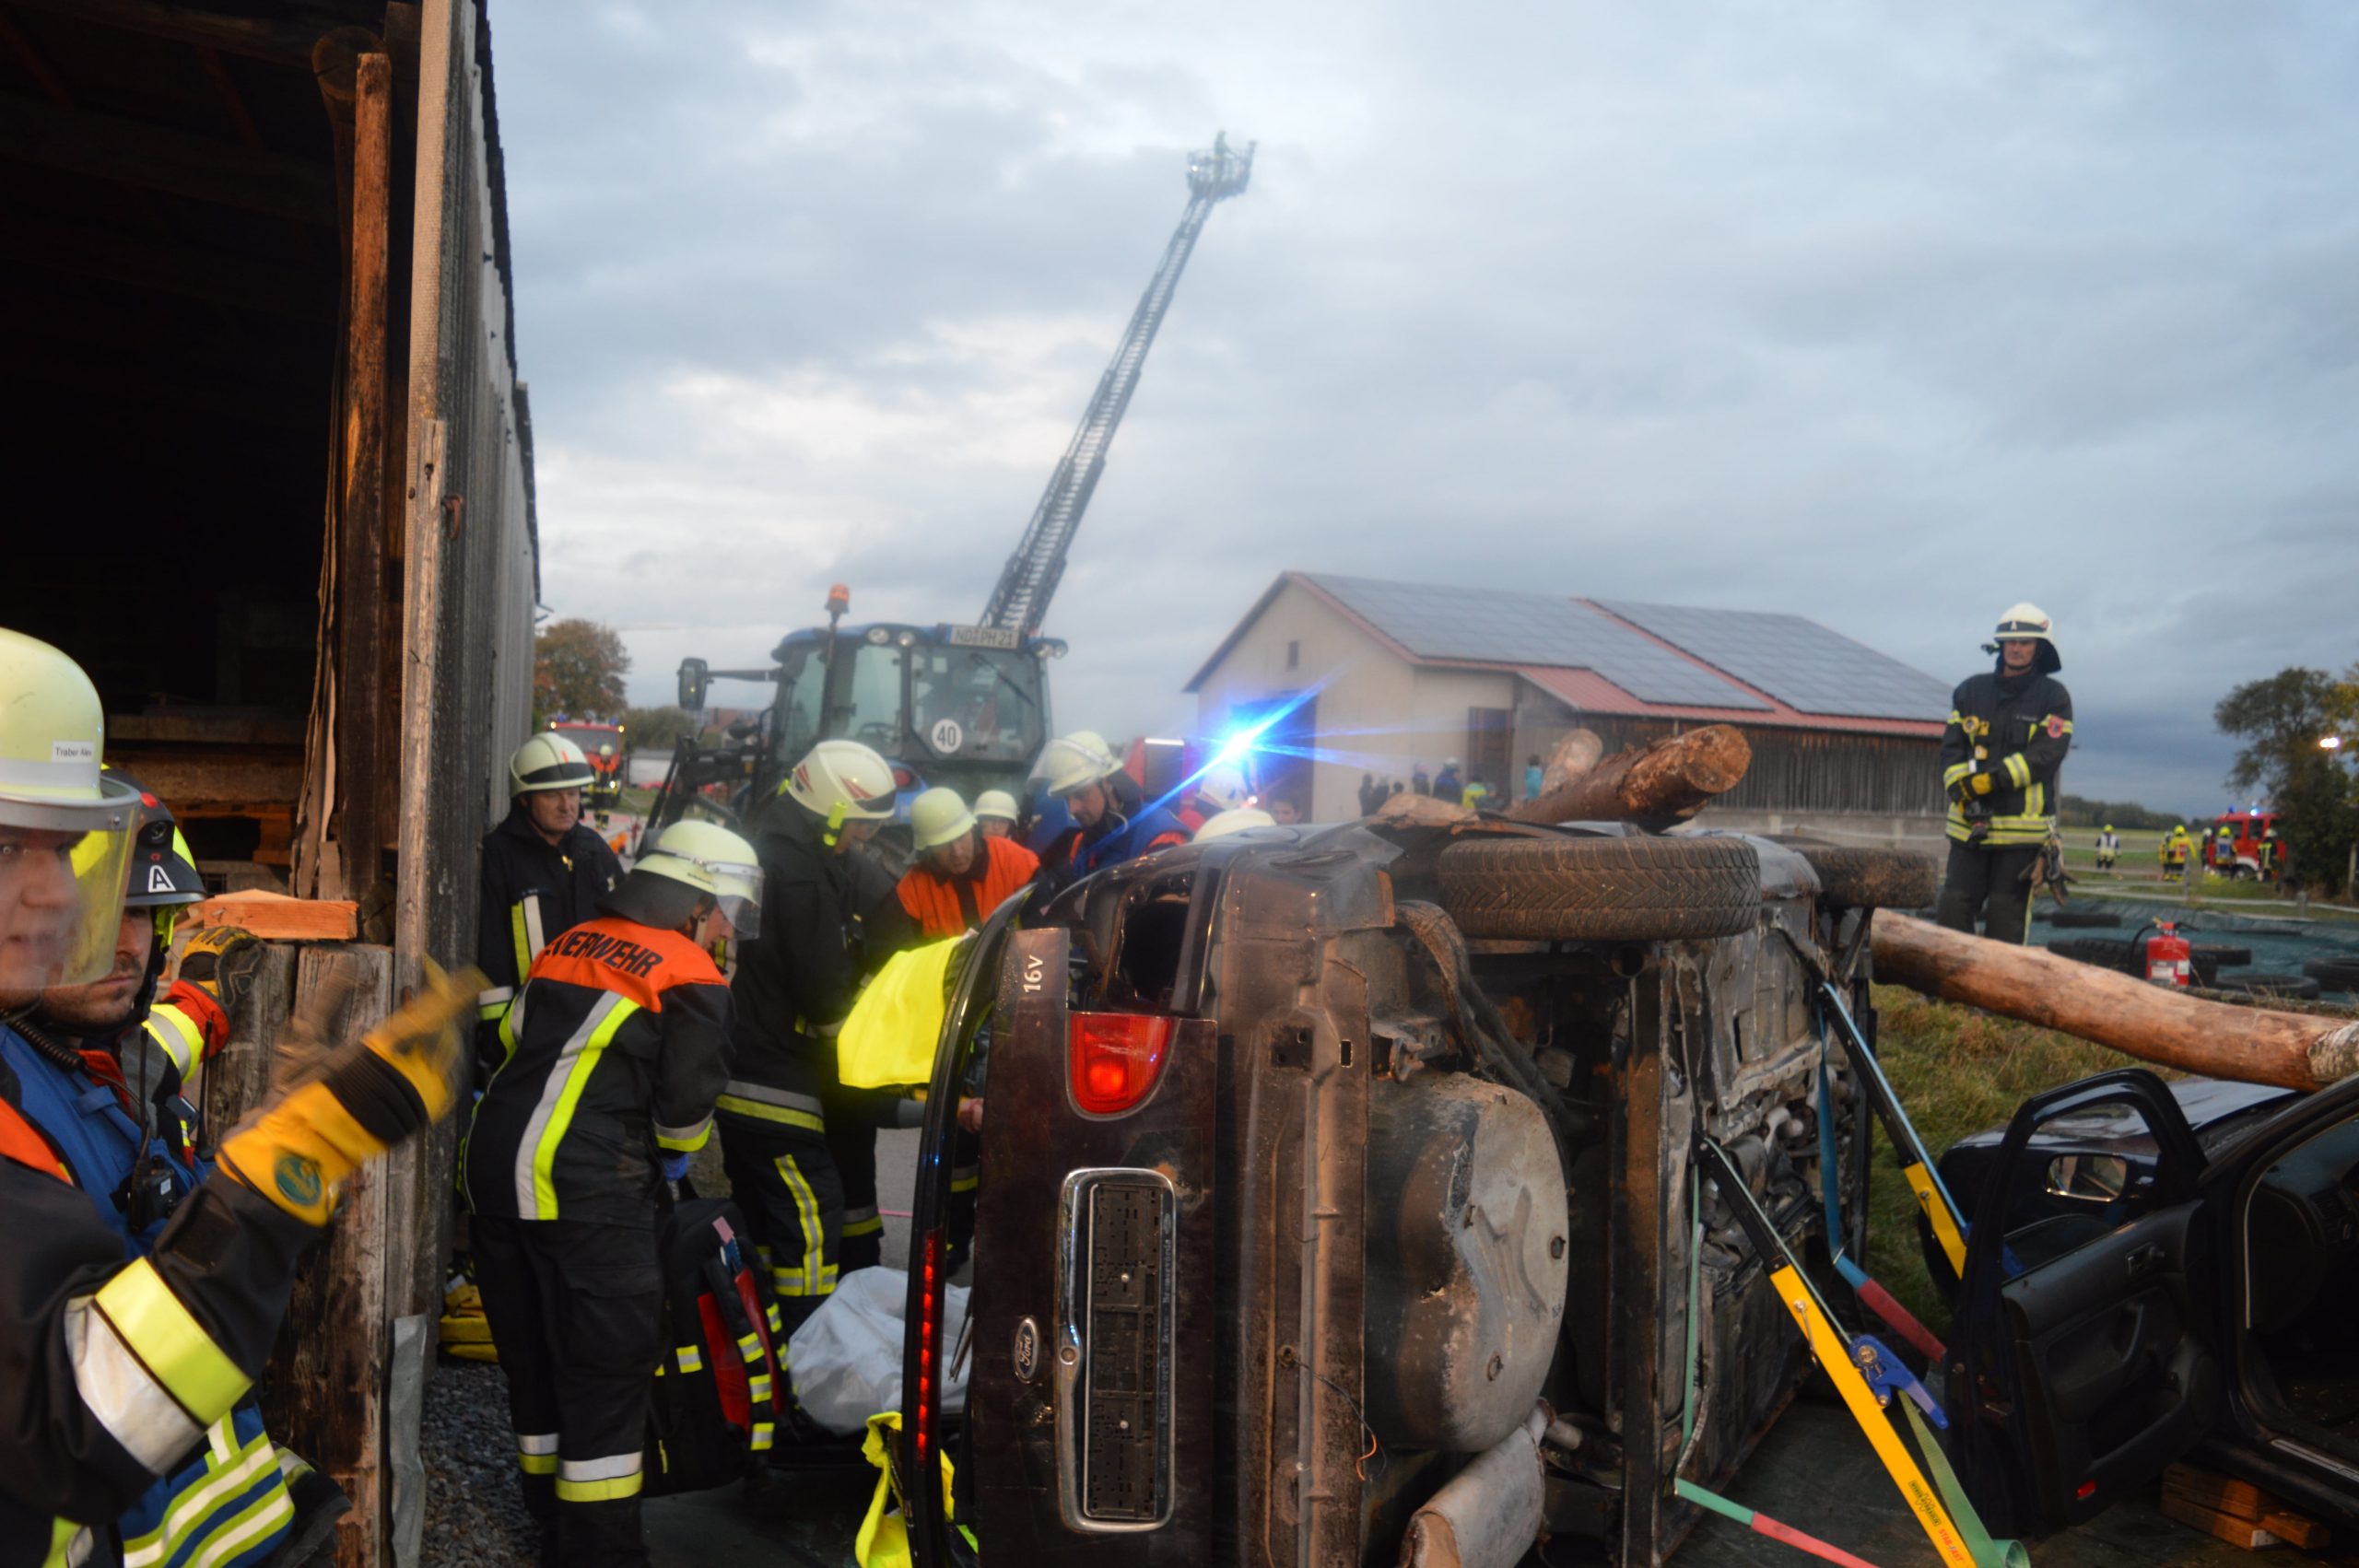 Brandschutzübung in Lichtenau mit vielfältigen Aufgaben für Feuerwehrkräfte